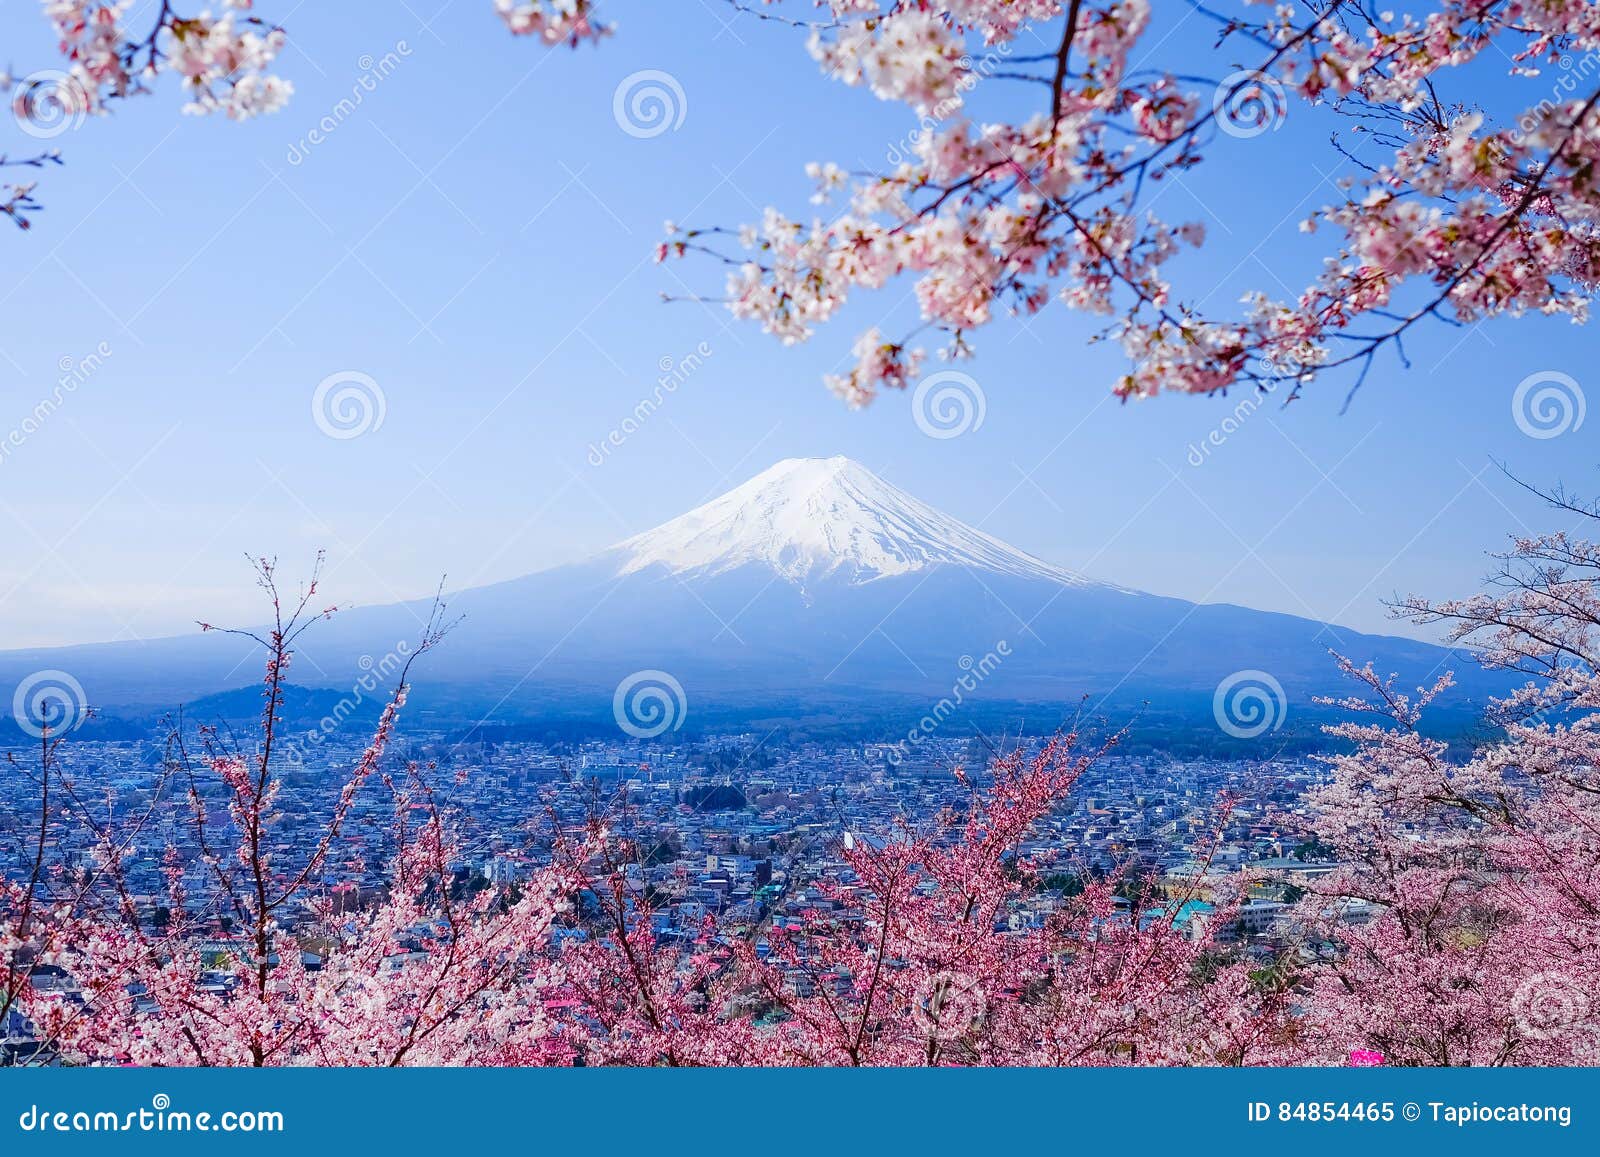 mt. fuji with cherry blossom (sakura )in spring, fujiyoshida, japan